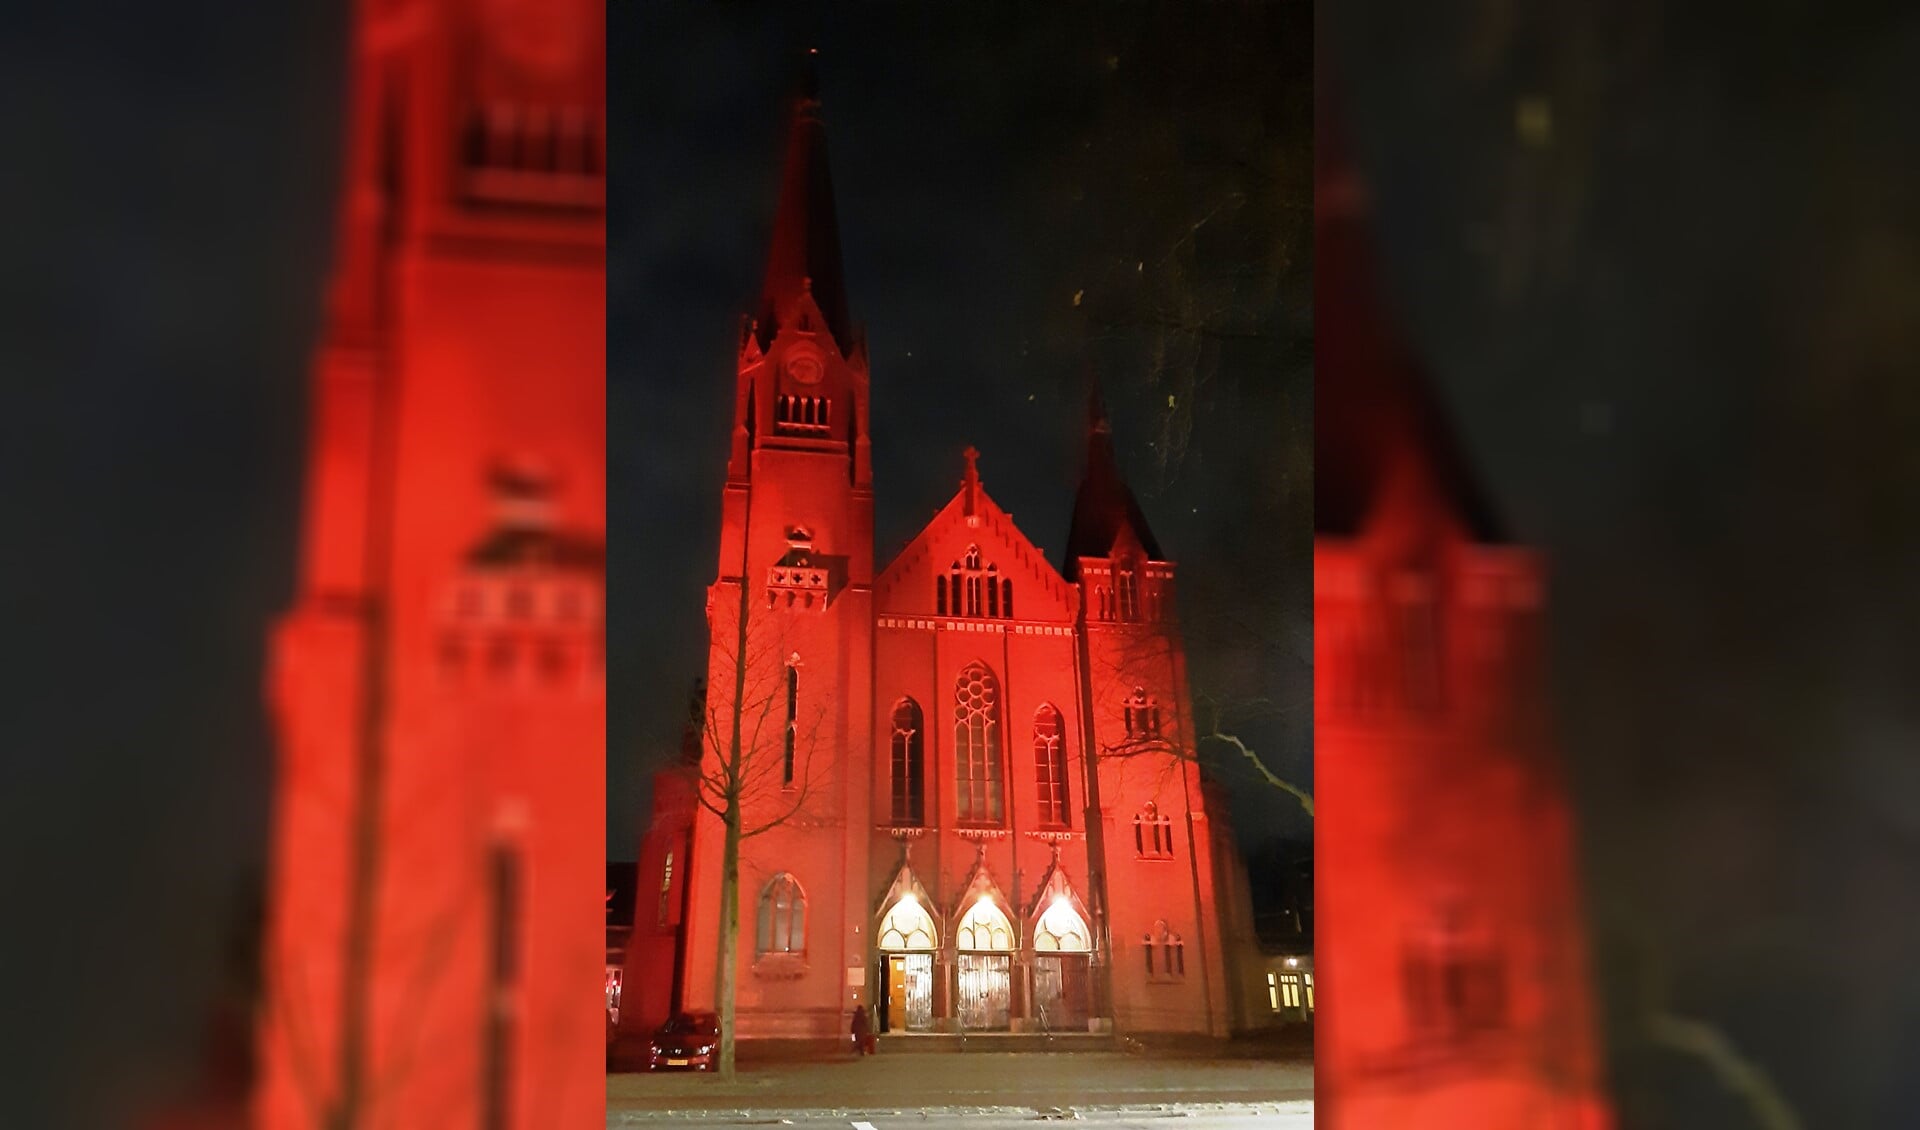 De kerk baadt in rood licht.